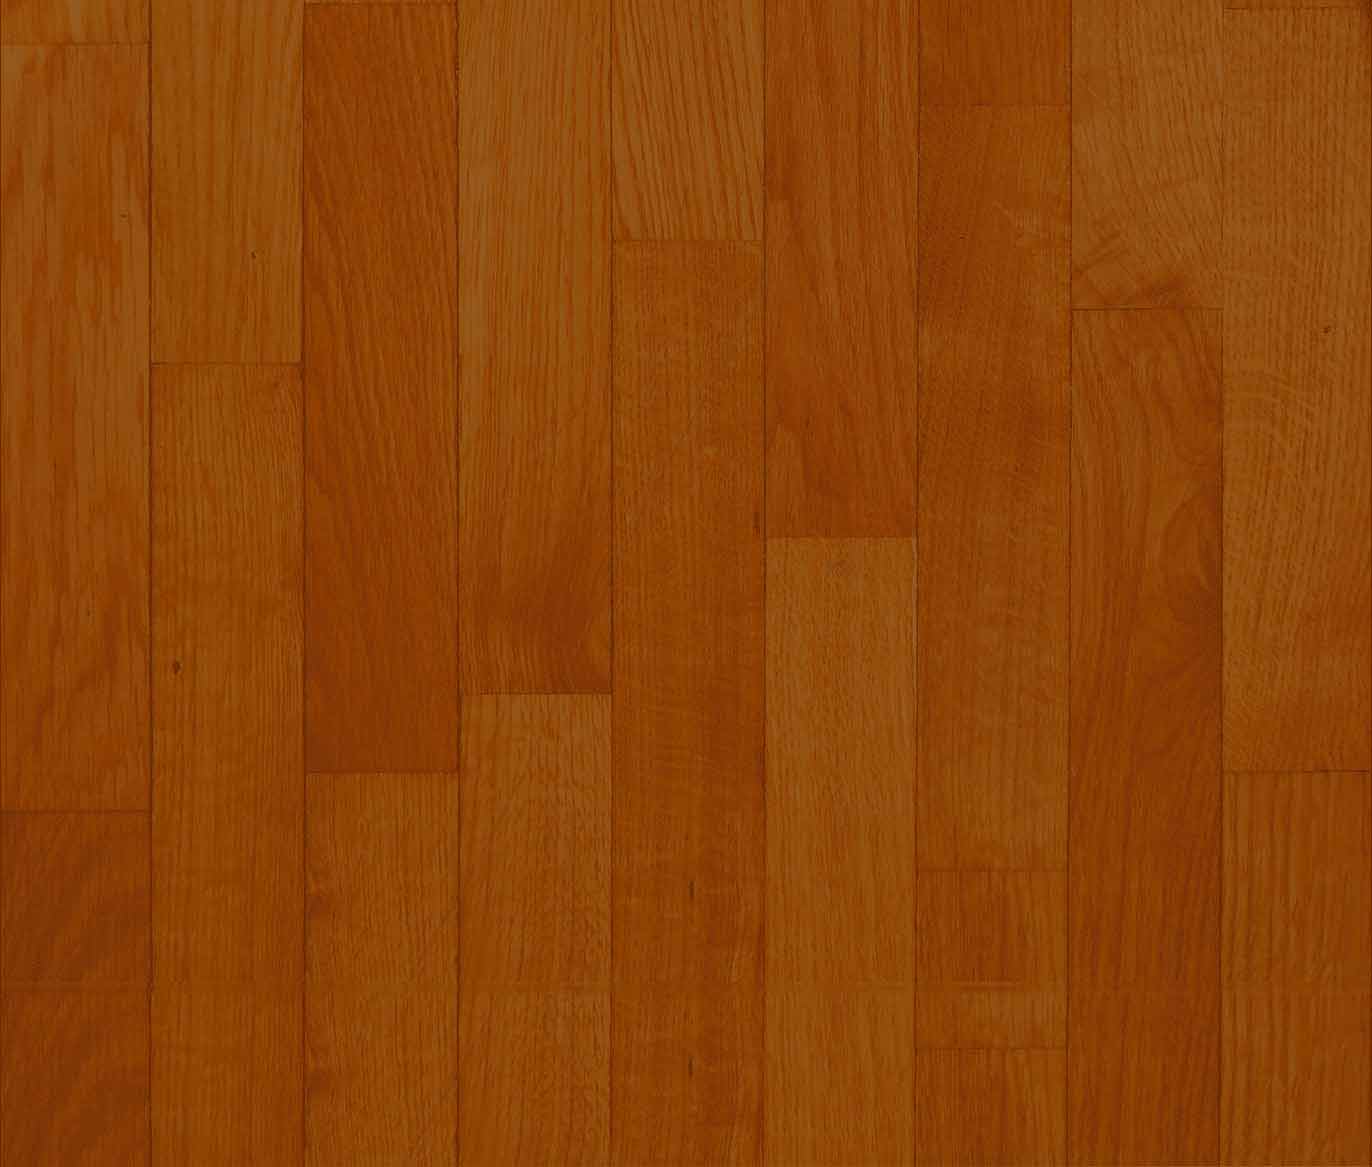 Wood Floor Background Jpg